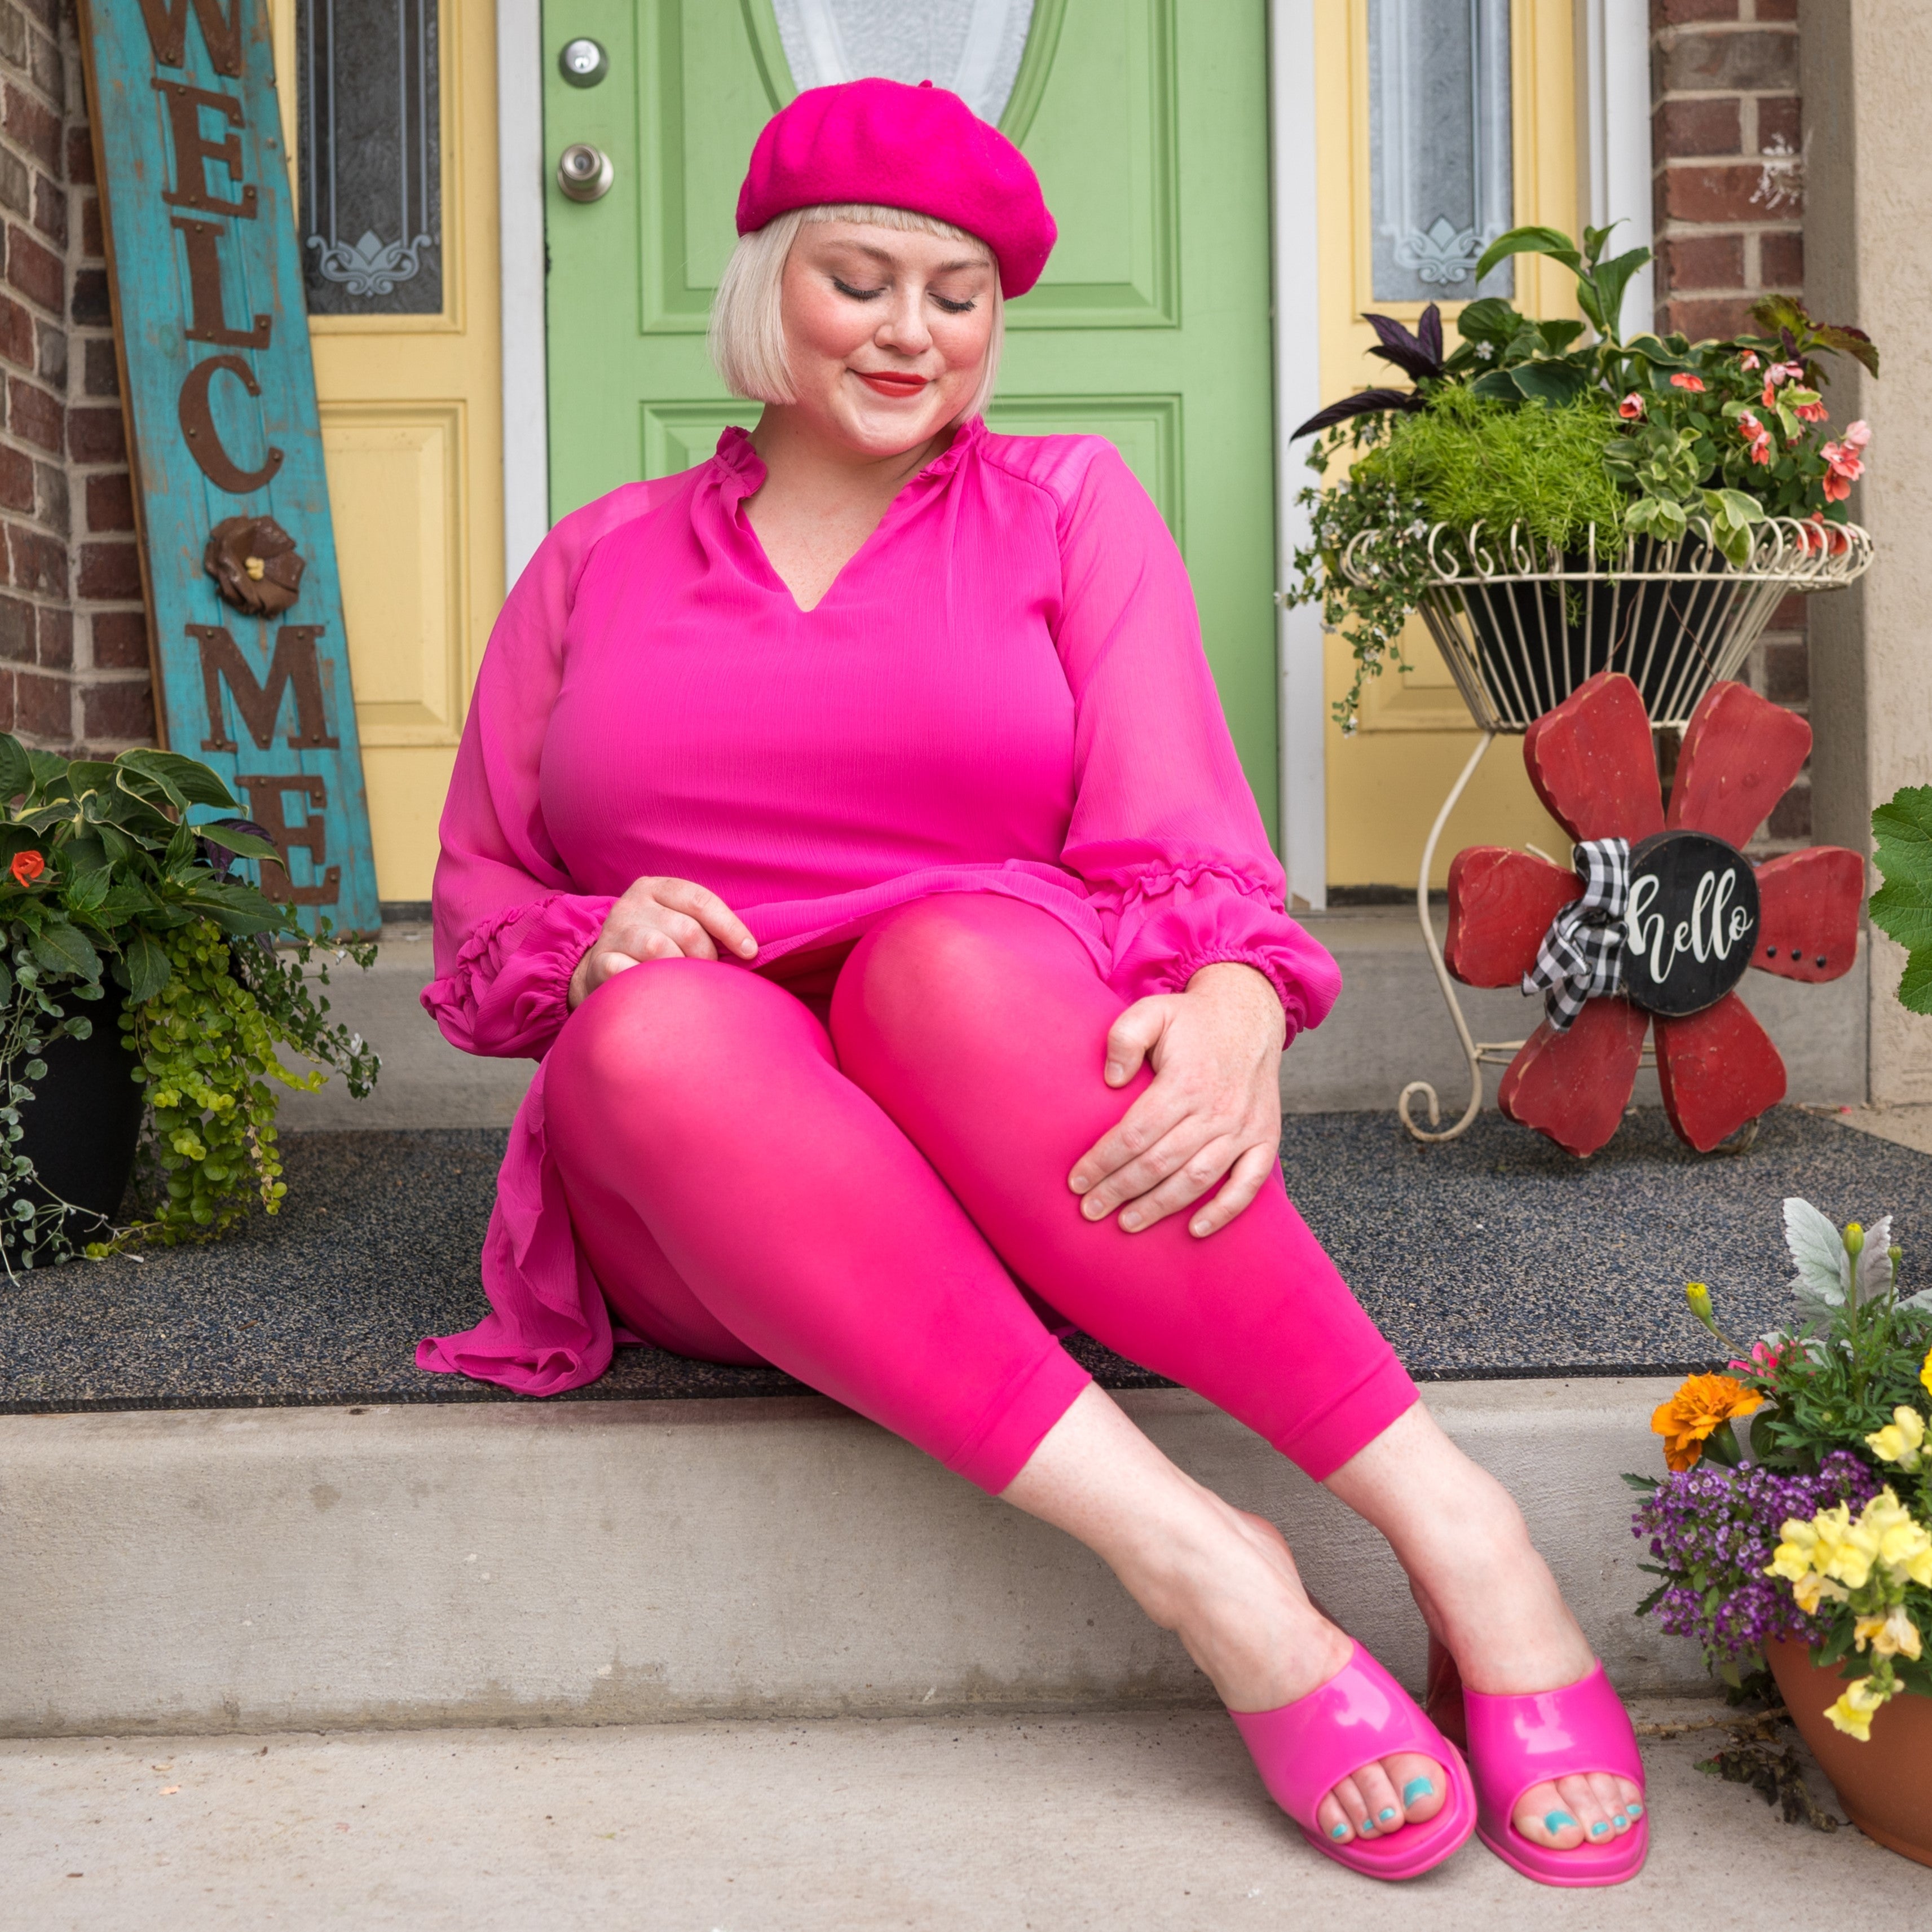 Capri Leggings - Large Pink Dragon Print – Funtastic Activewear